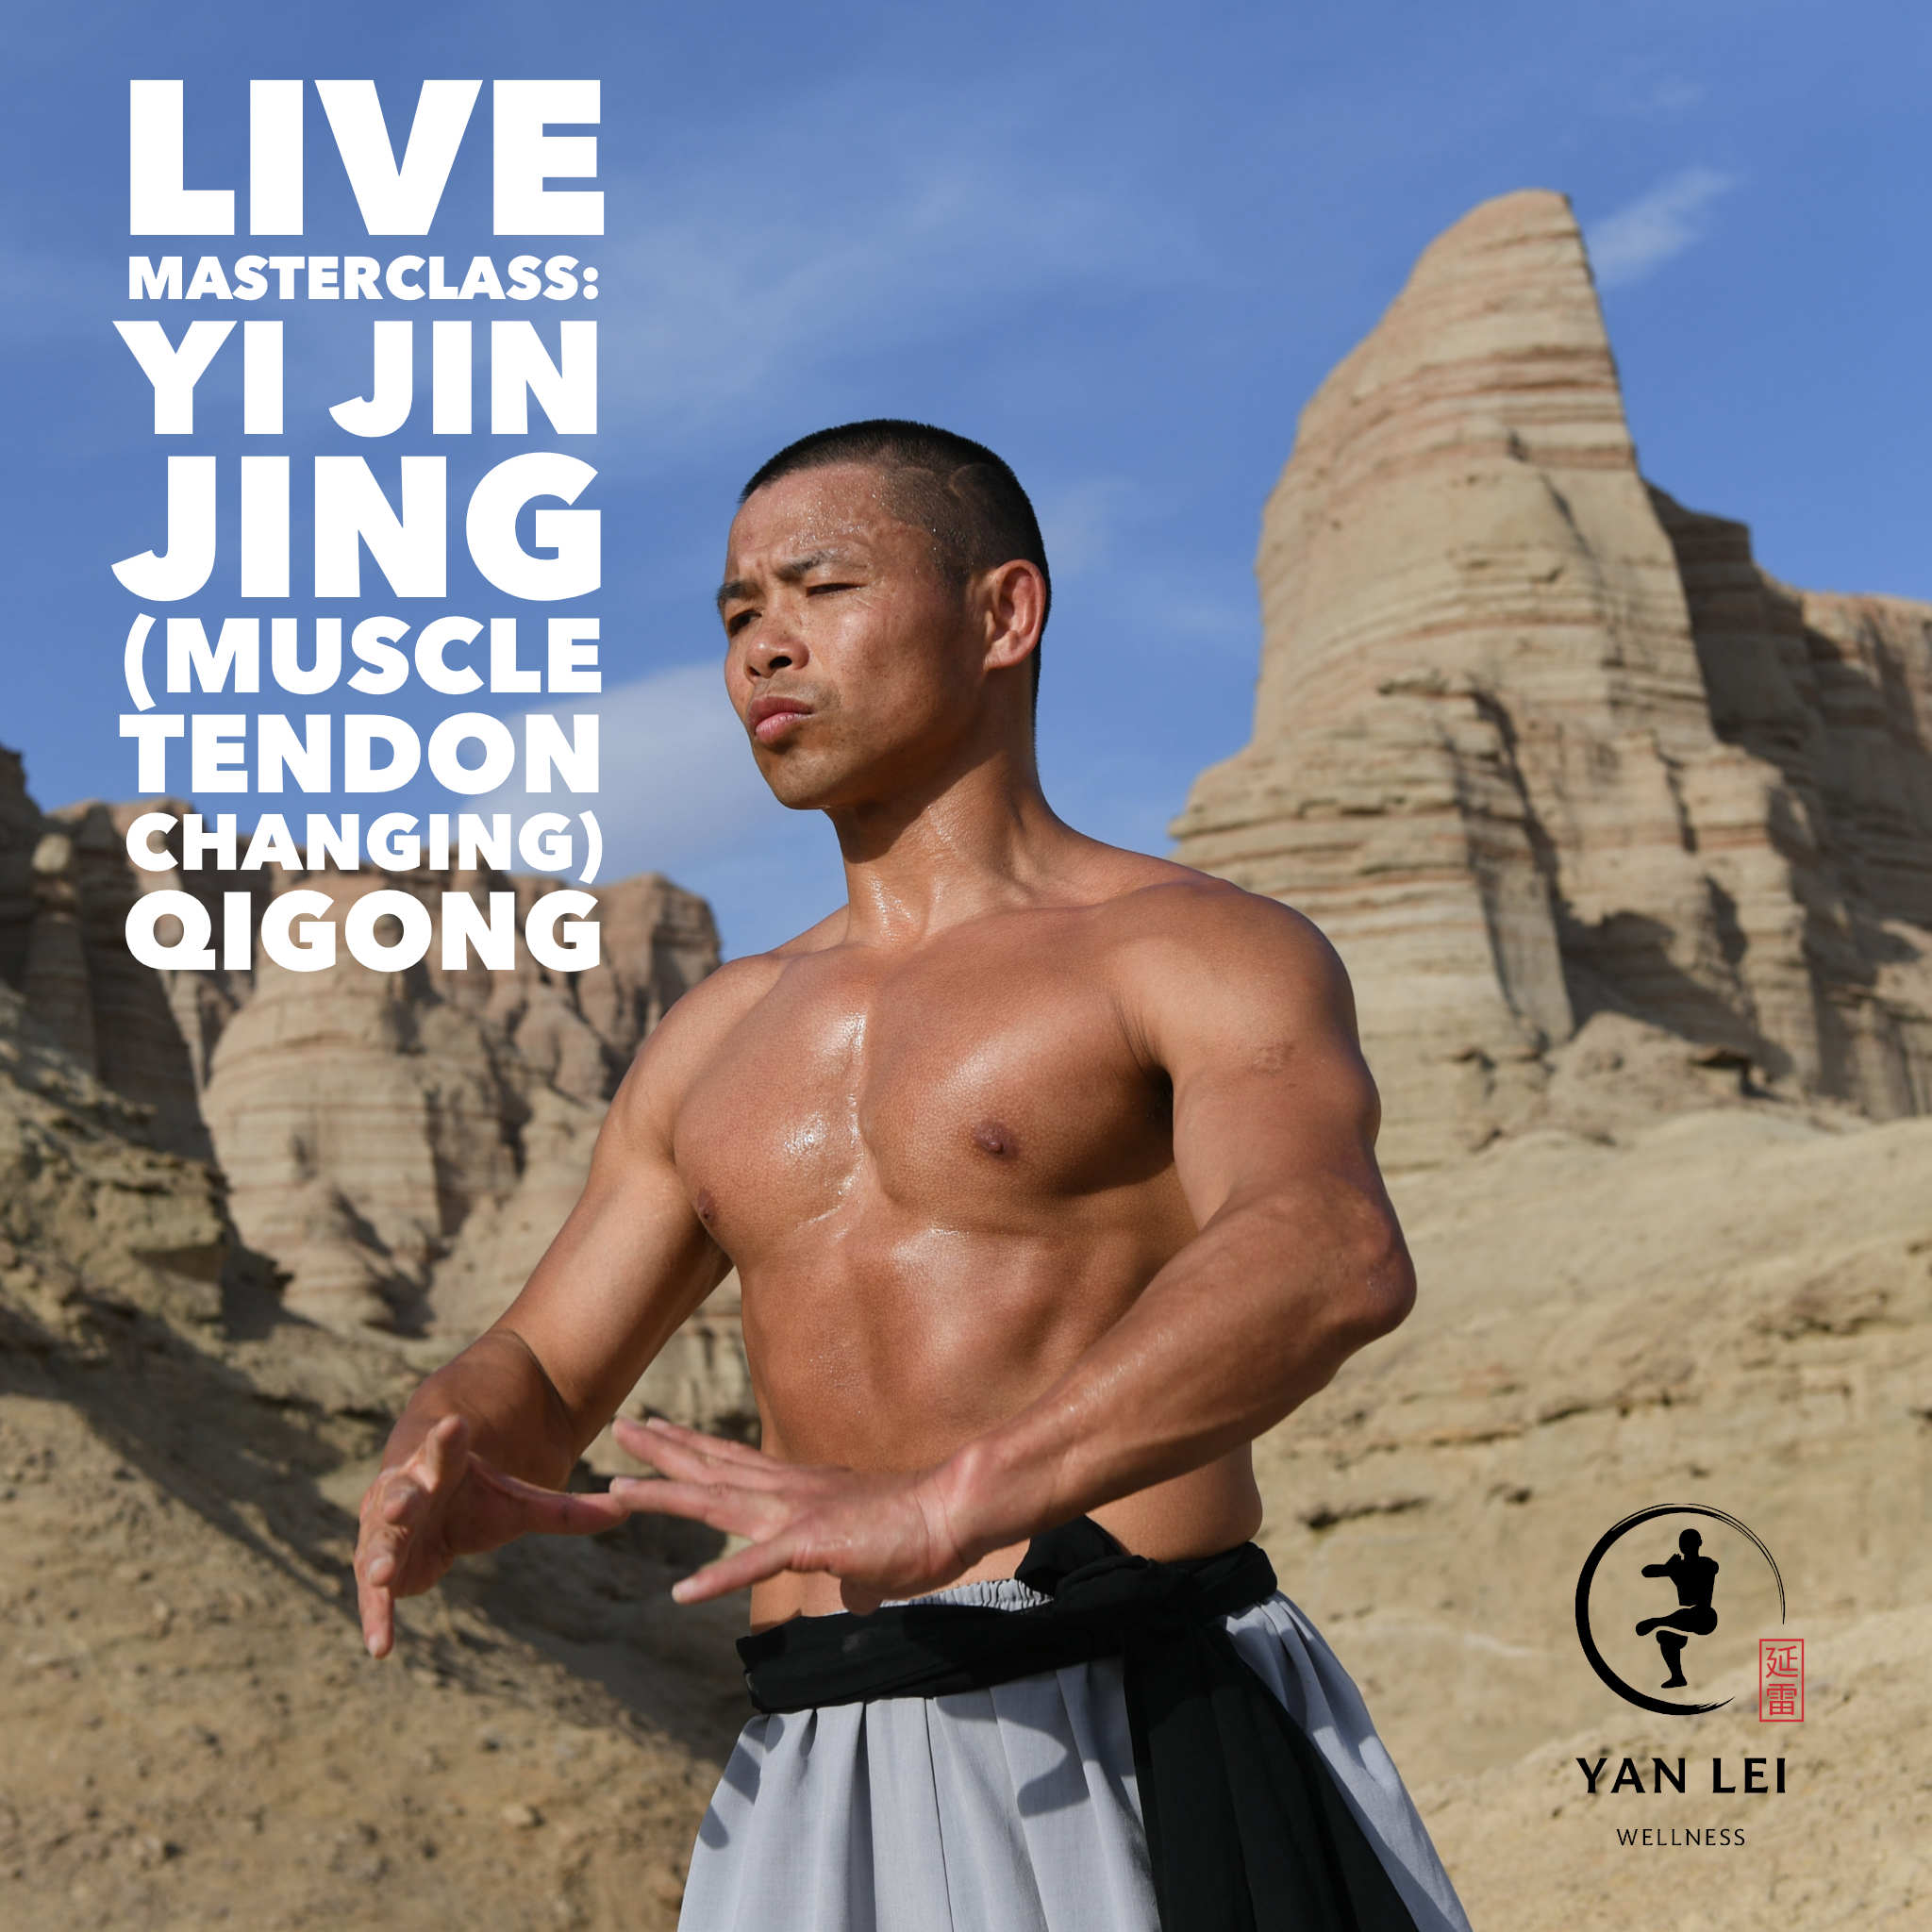 Yi Jin Jing (Muscle Tendon Changing) Qigong - Live Masterclass